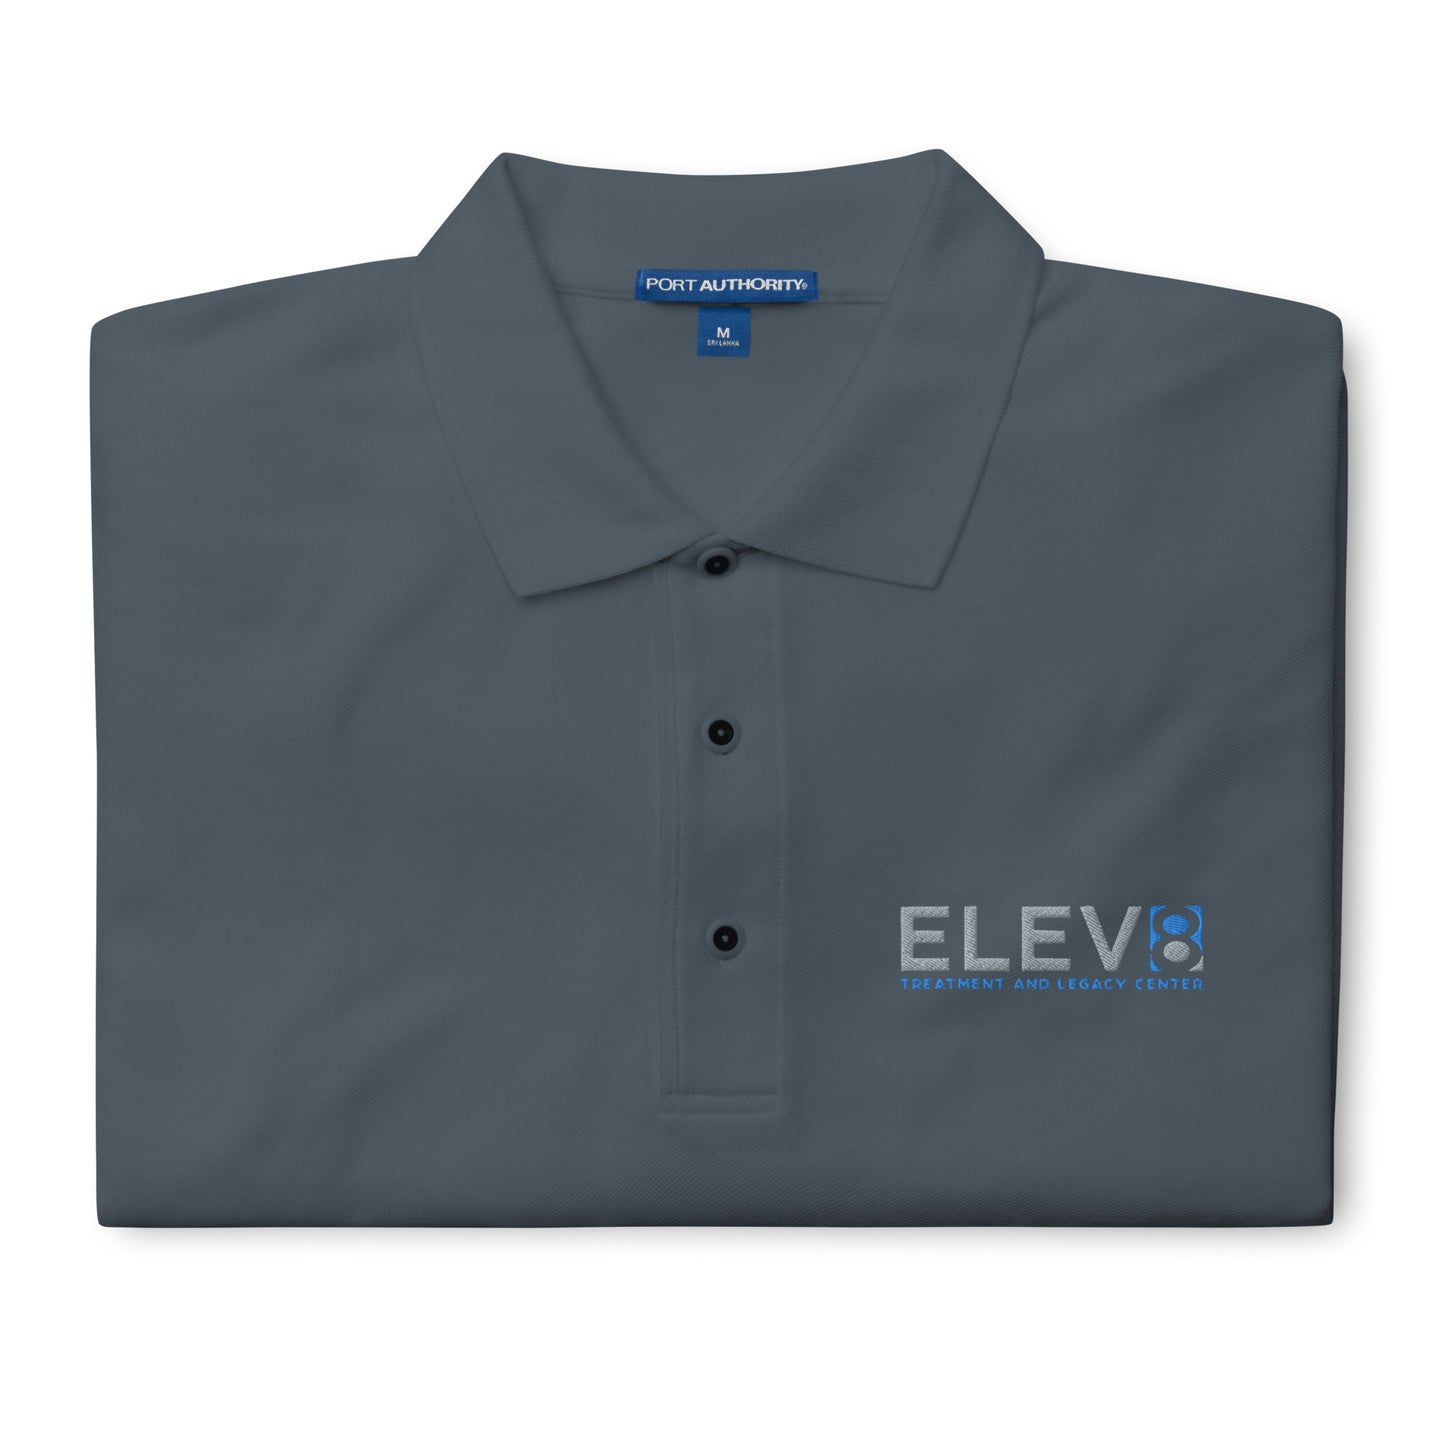 Elev8 Men's Premium Polo